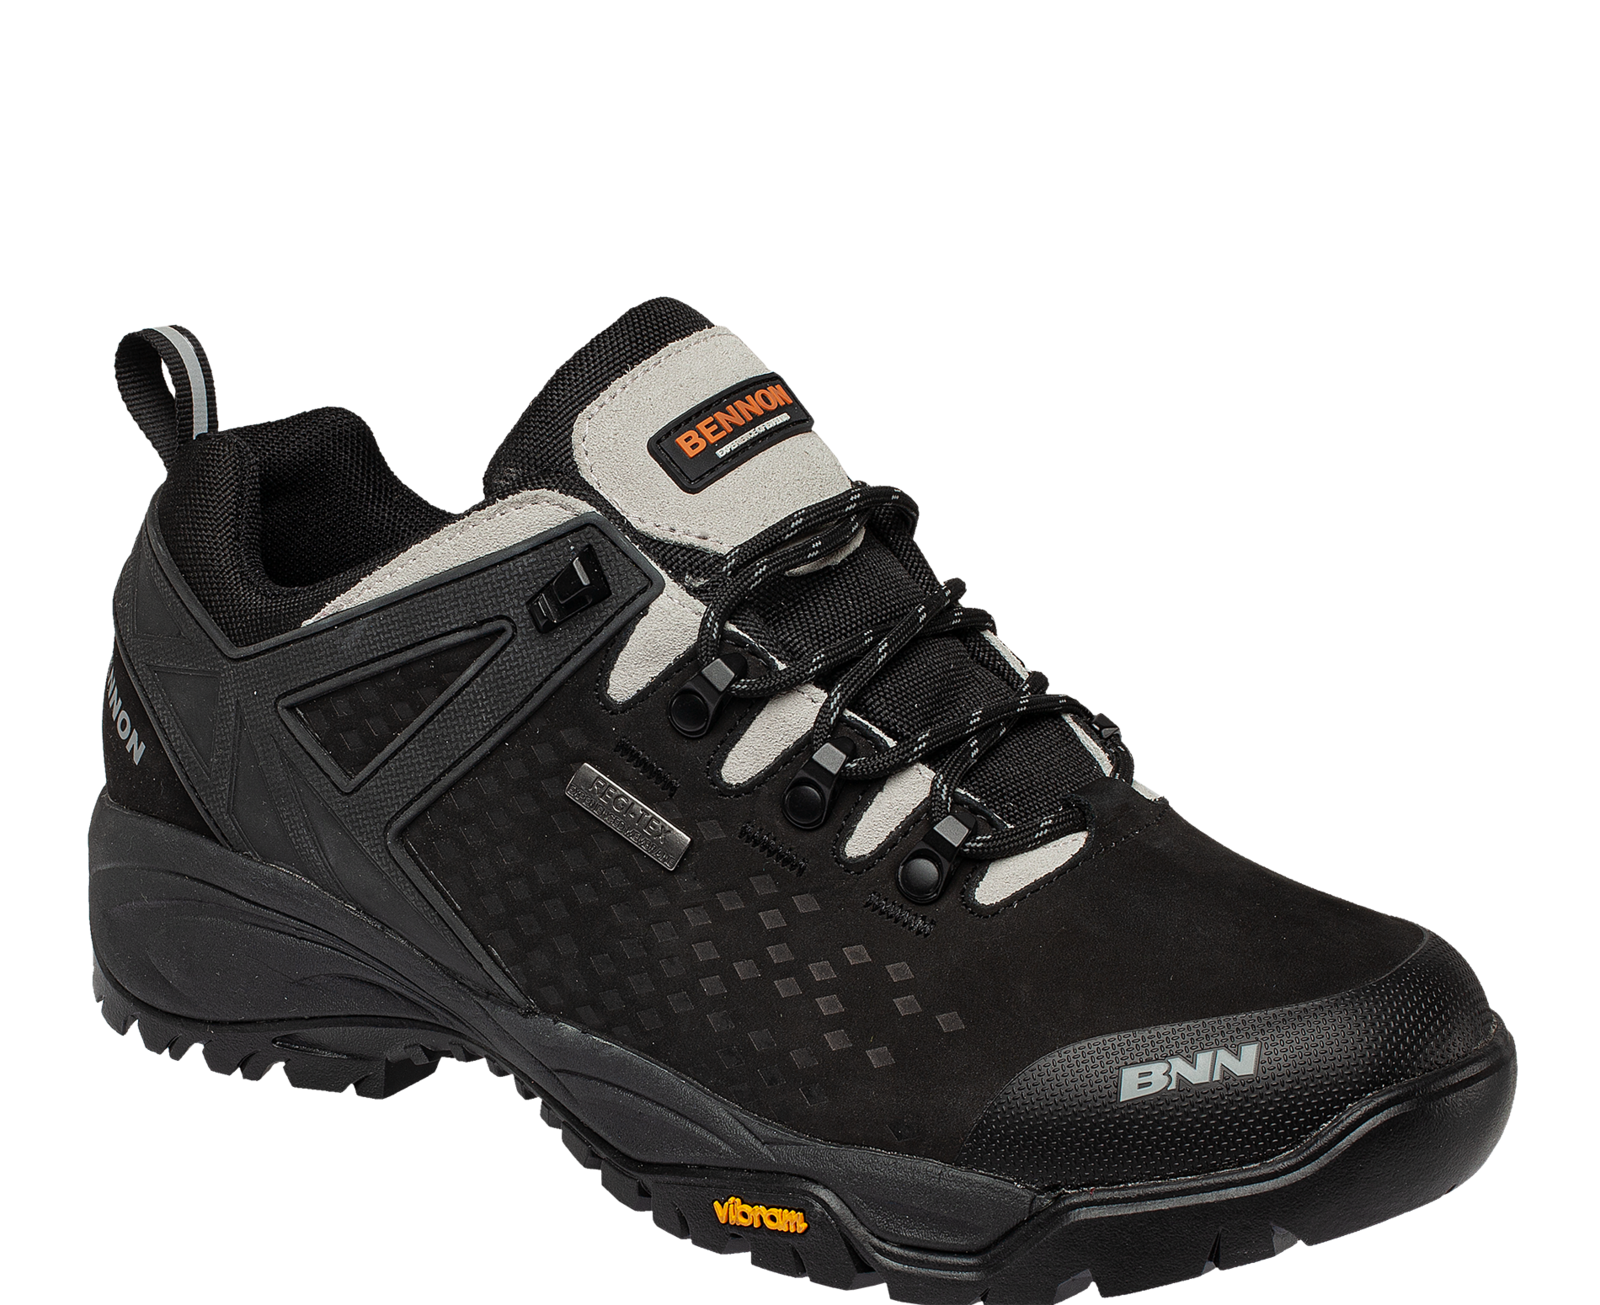 Outdoorová obuv Bennon Recado XTR O2 s membránou - veľkosť: 36, farba: čierna